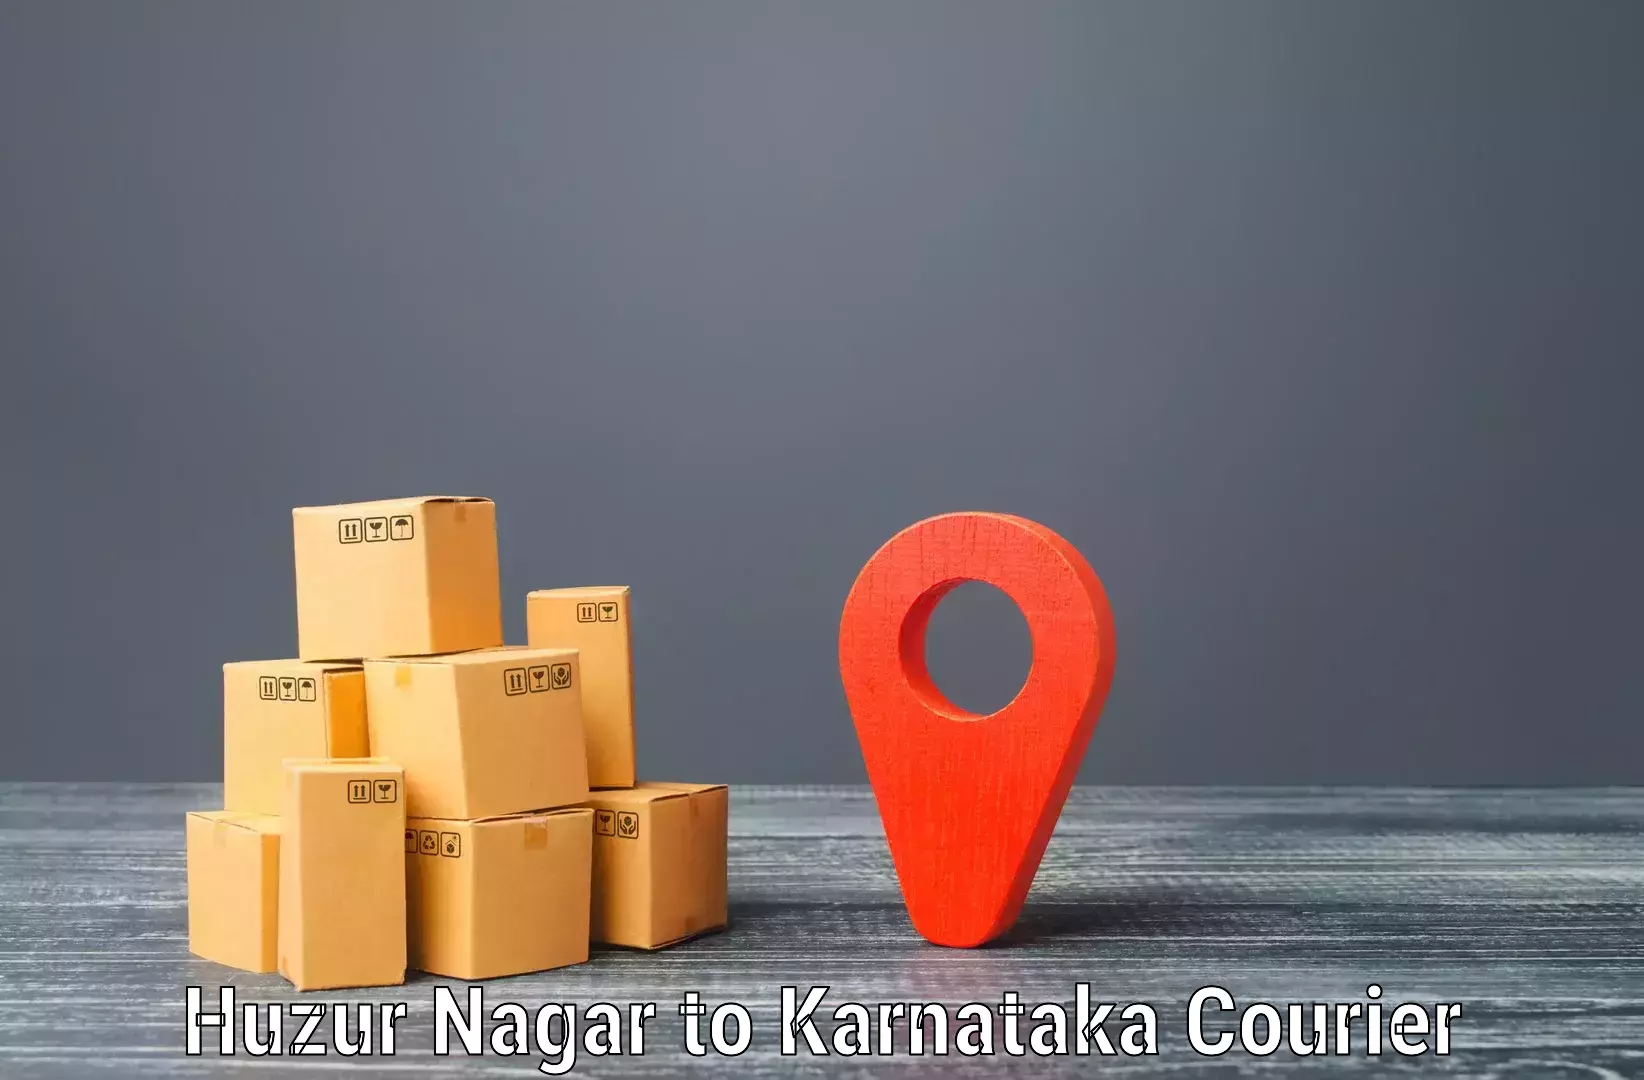 Express logistics providers Huzur Nagar to Hukkeri